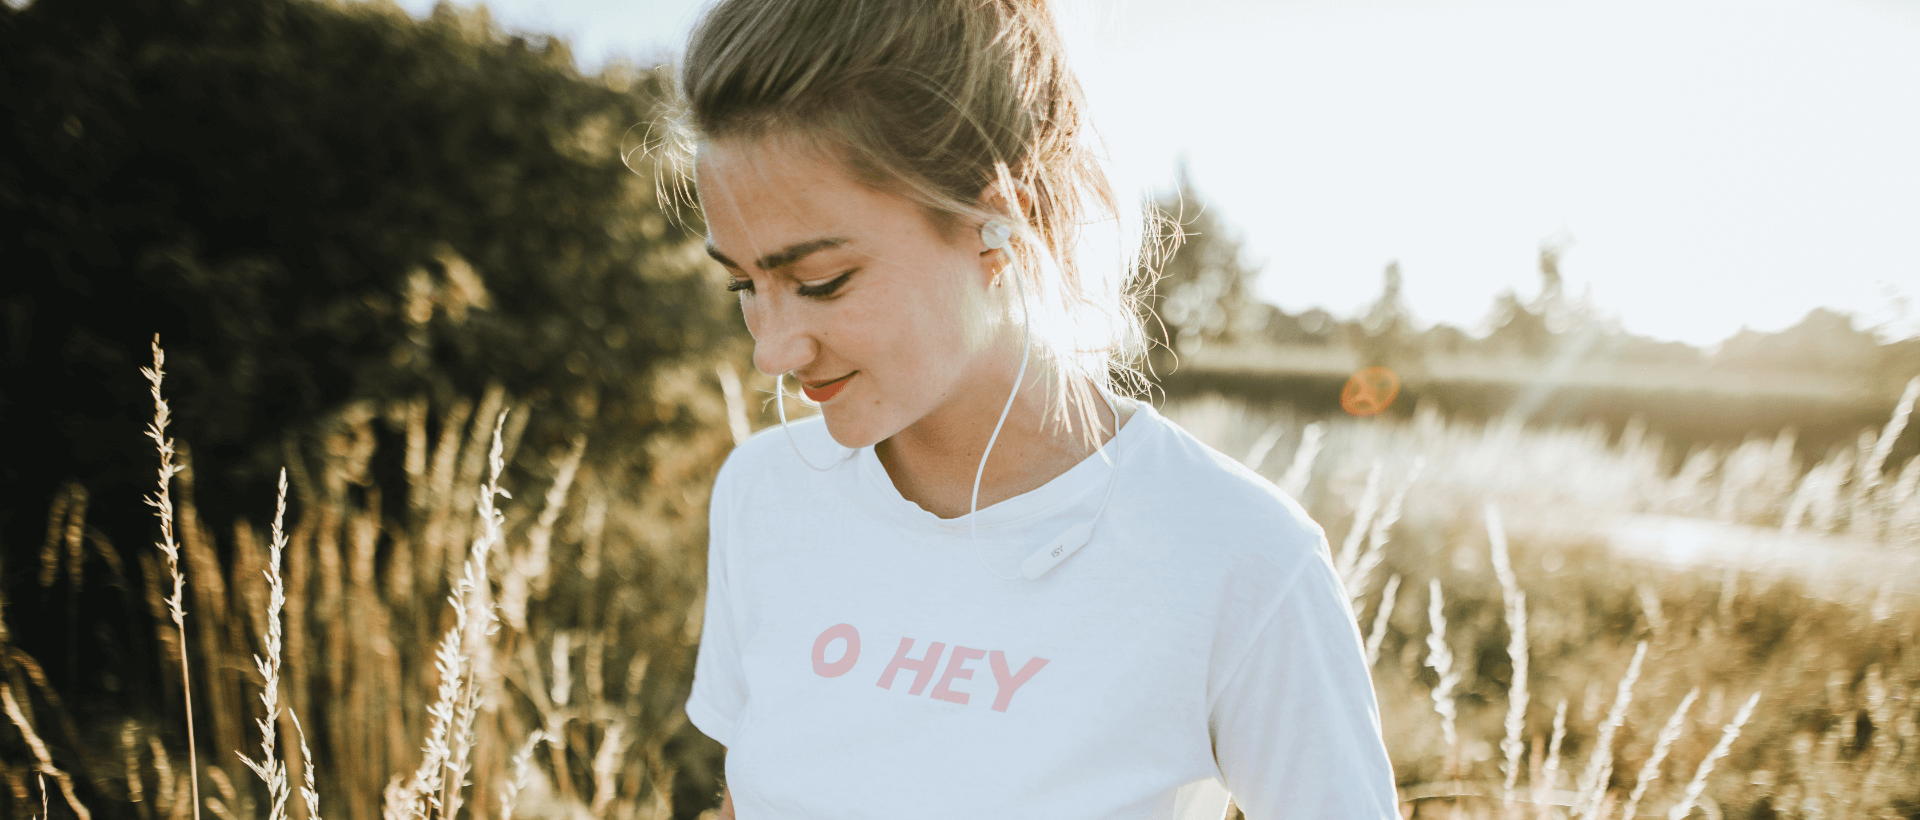 Jonge vrouw luistert naar muziek met in-ear oordopjes van het merk ISY, in een veld met hoge grashalmen, zomerse stemming, zonsondergang